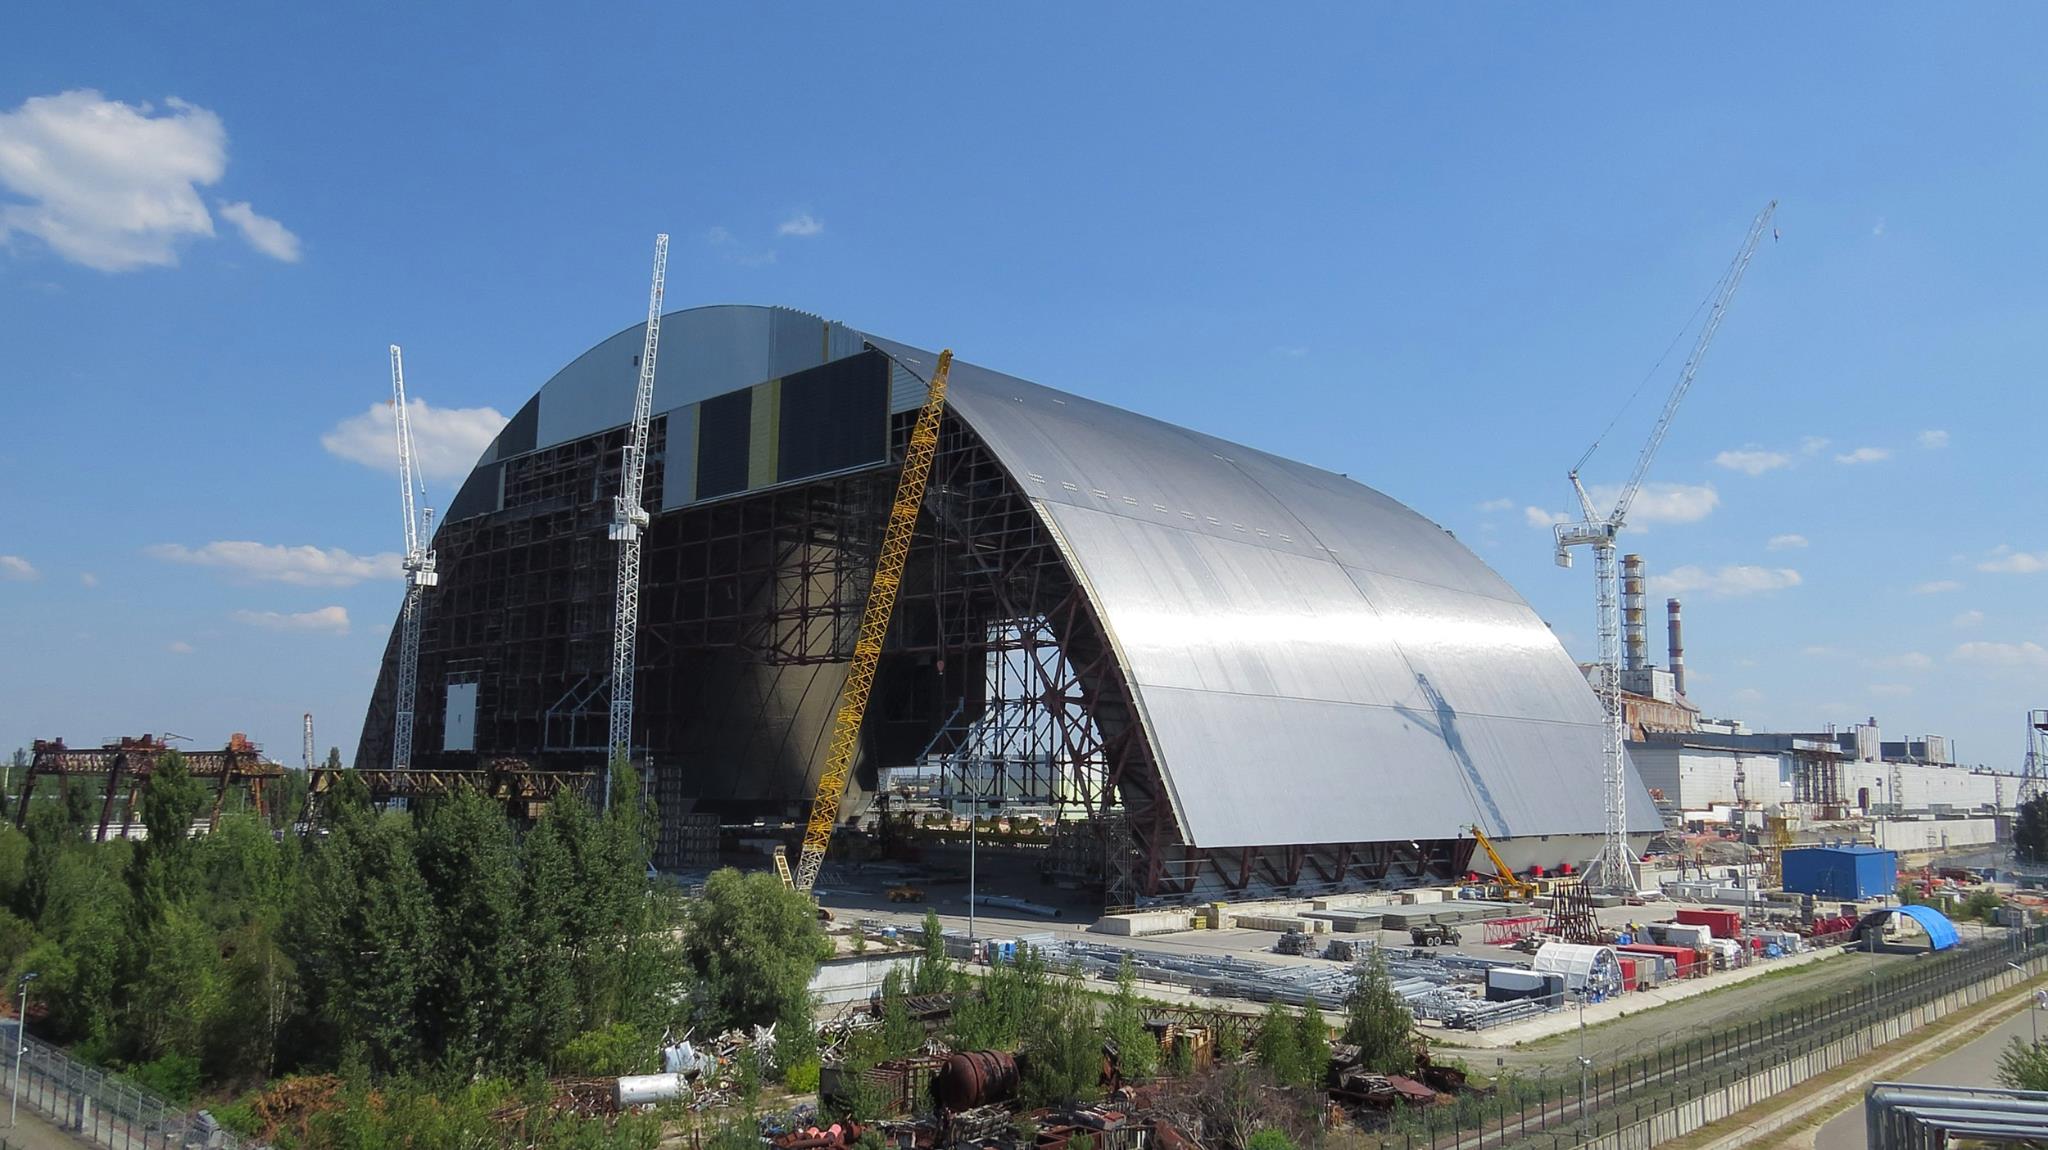 Україні передали в експлуатацію нове захисне накриття над енергоблоком у Чорнобилі: чим новий конфаймент відрізняється від старого саркофагу